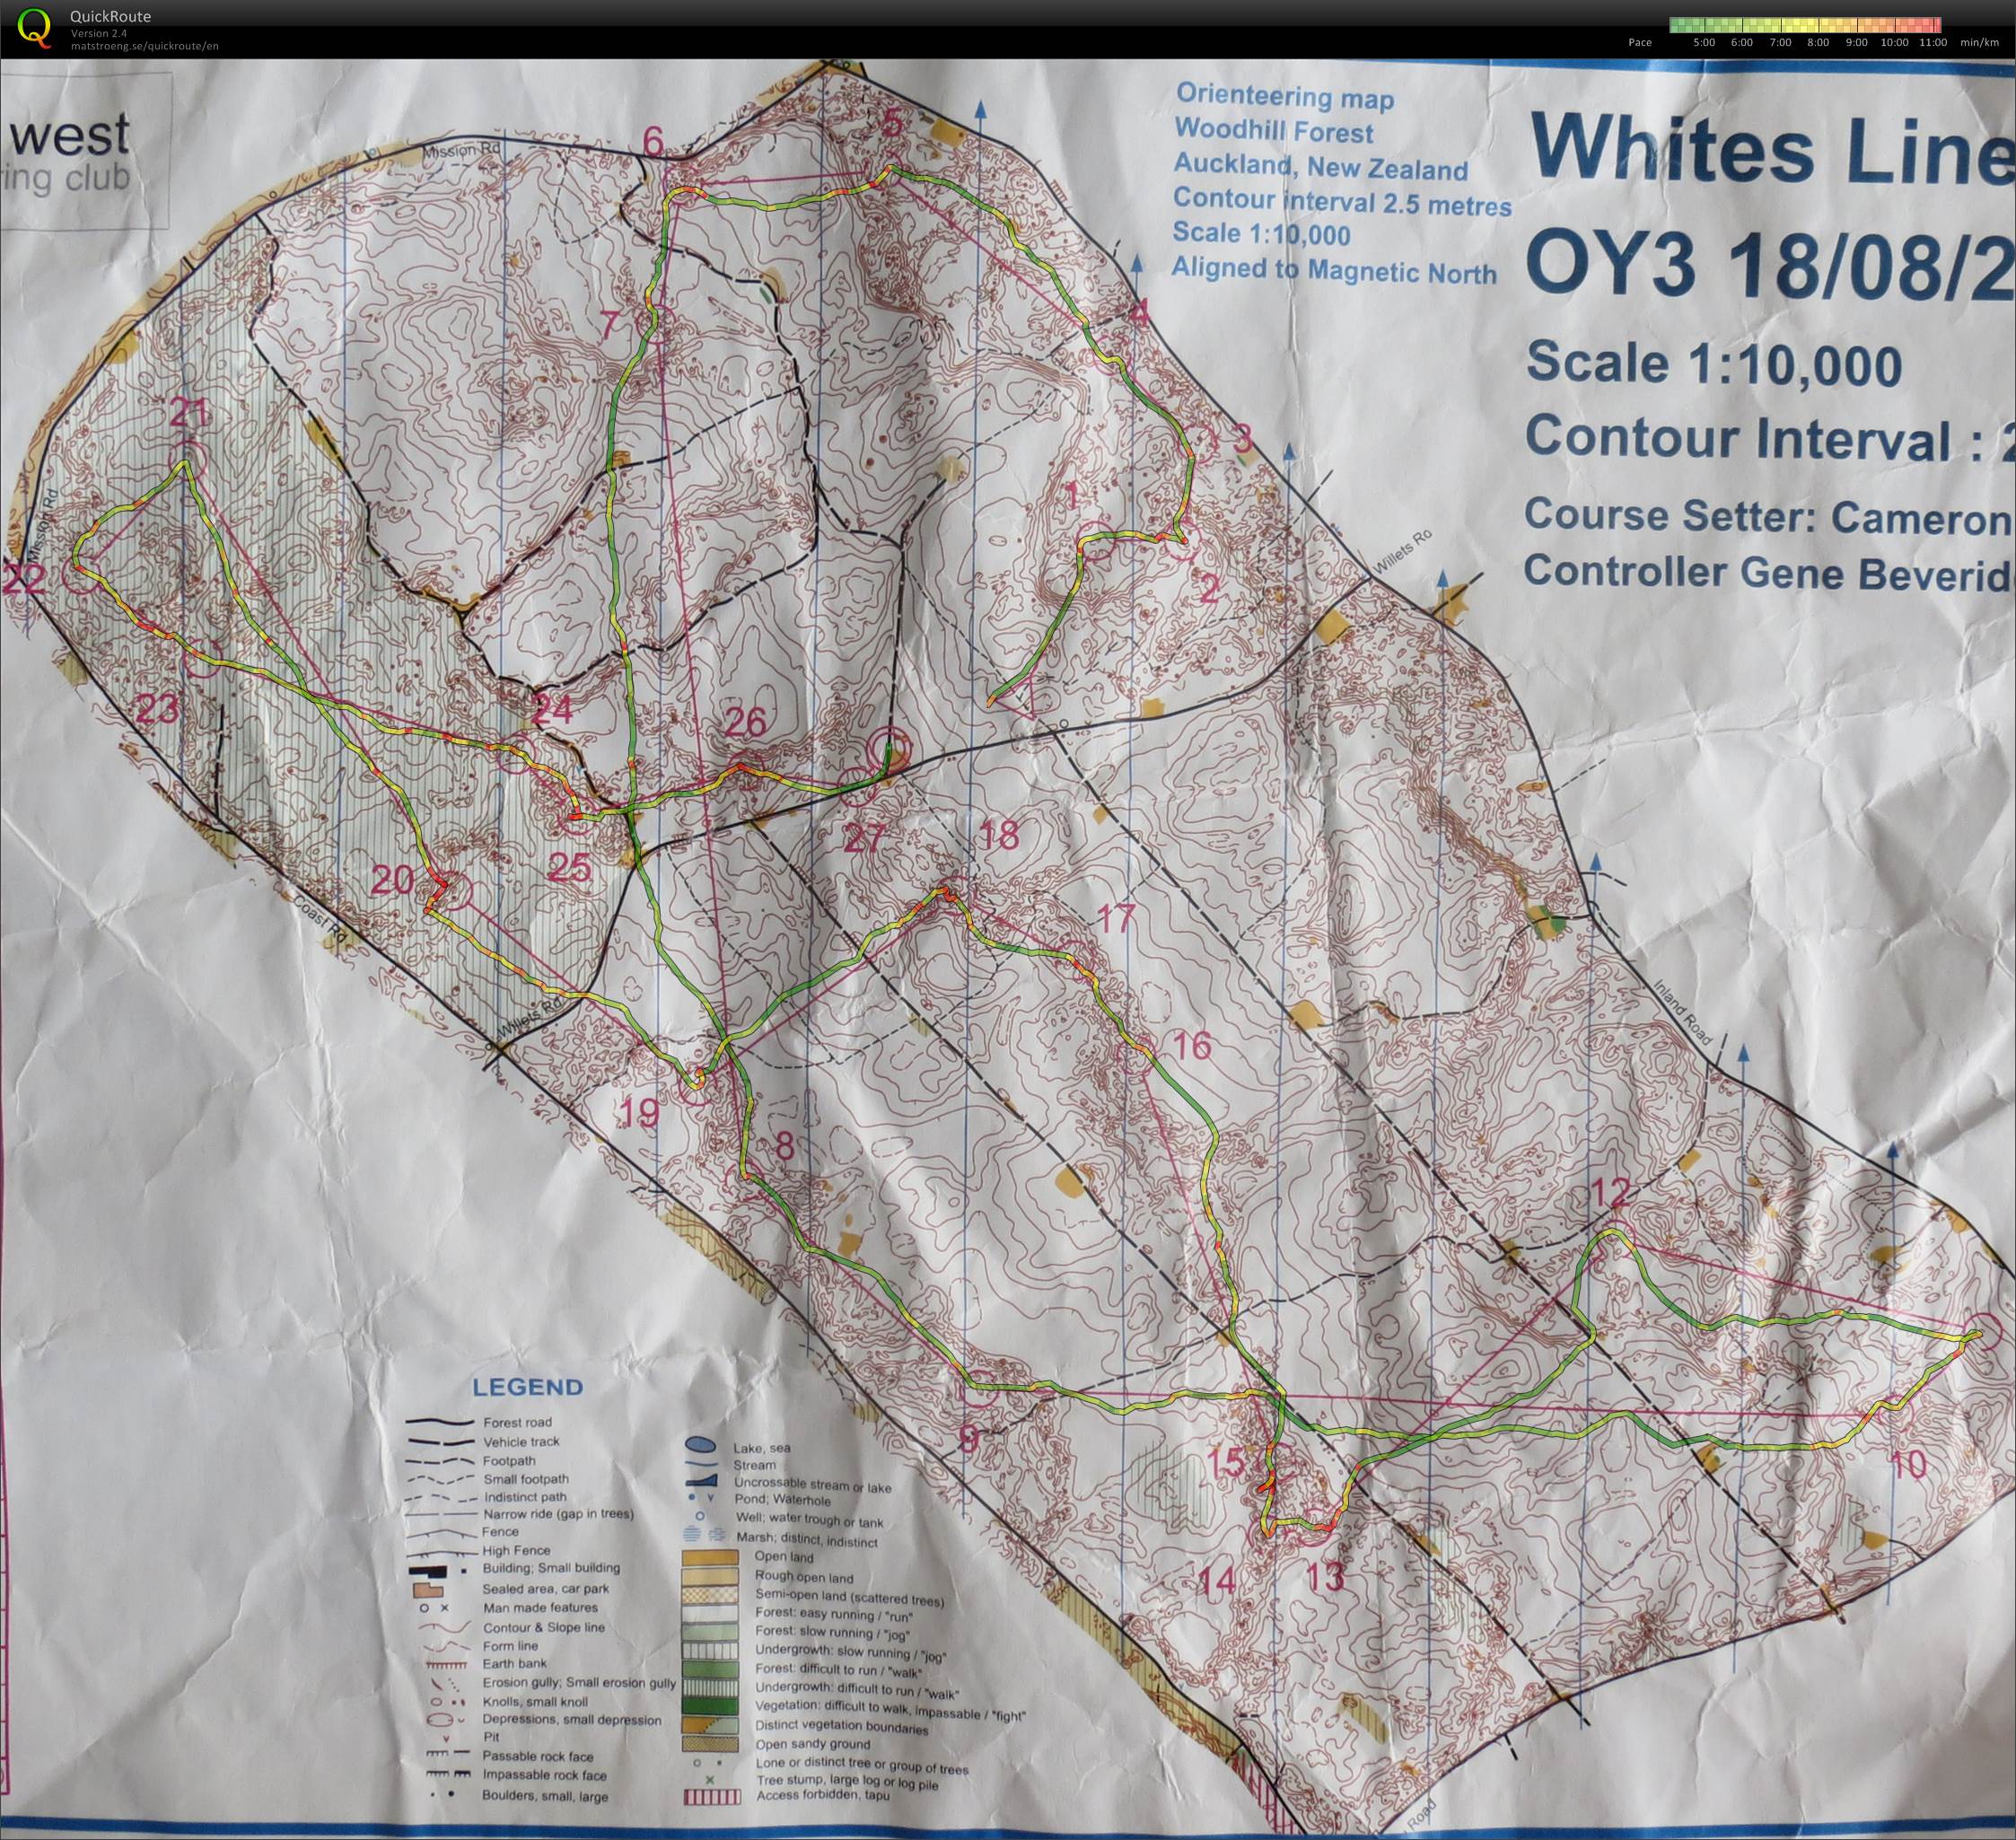 OY3 2013 Whites Line (17/08/2013)